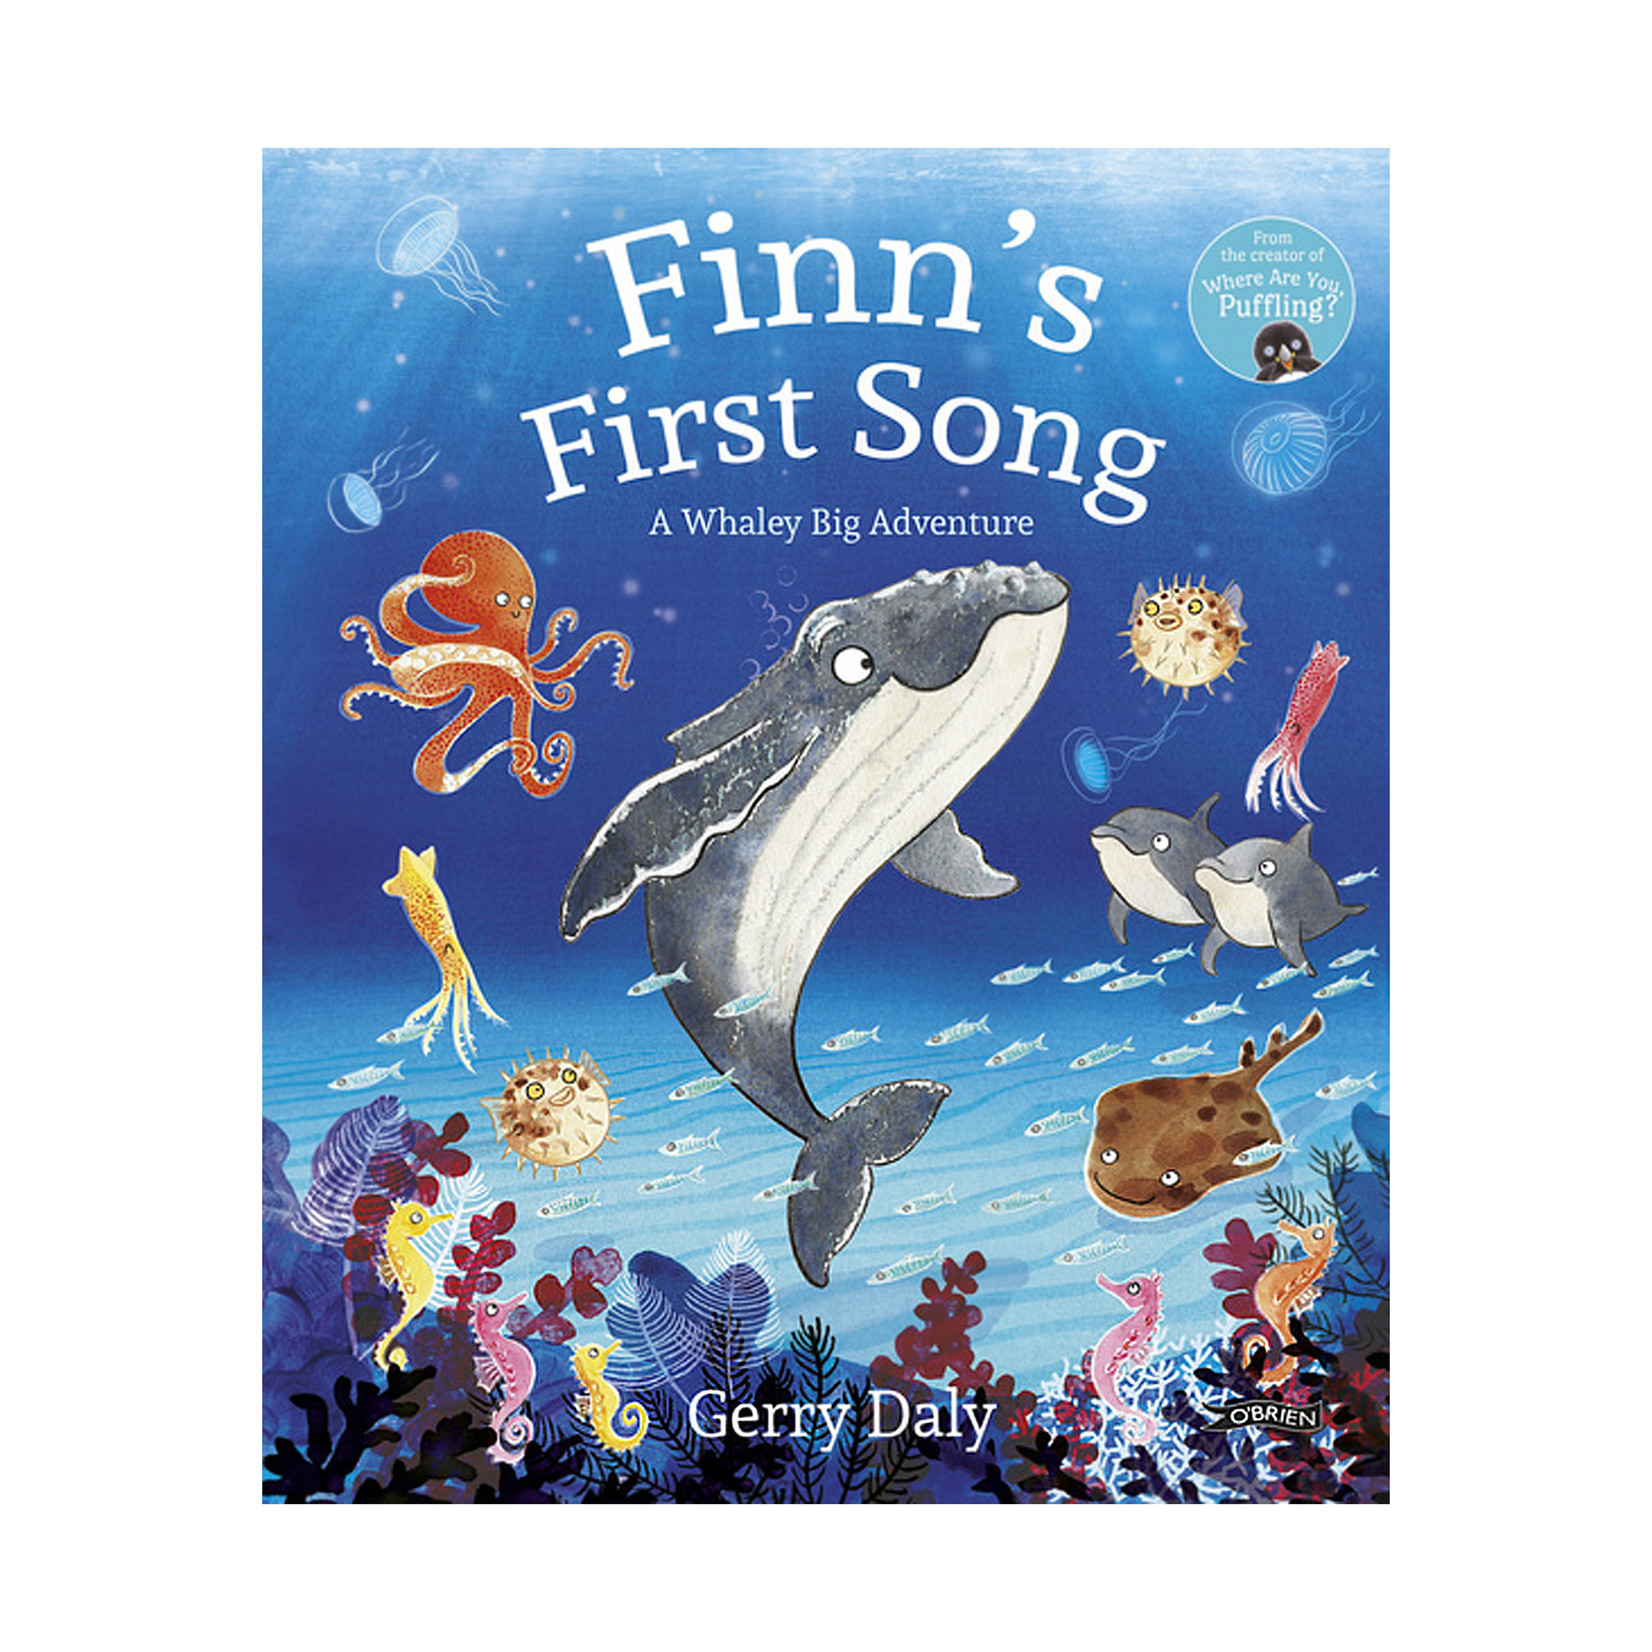 Celtic Books "Finn's First Song"